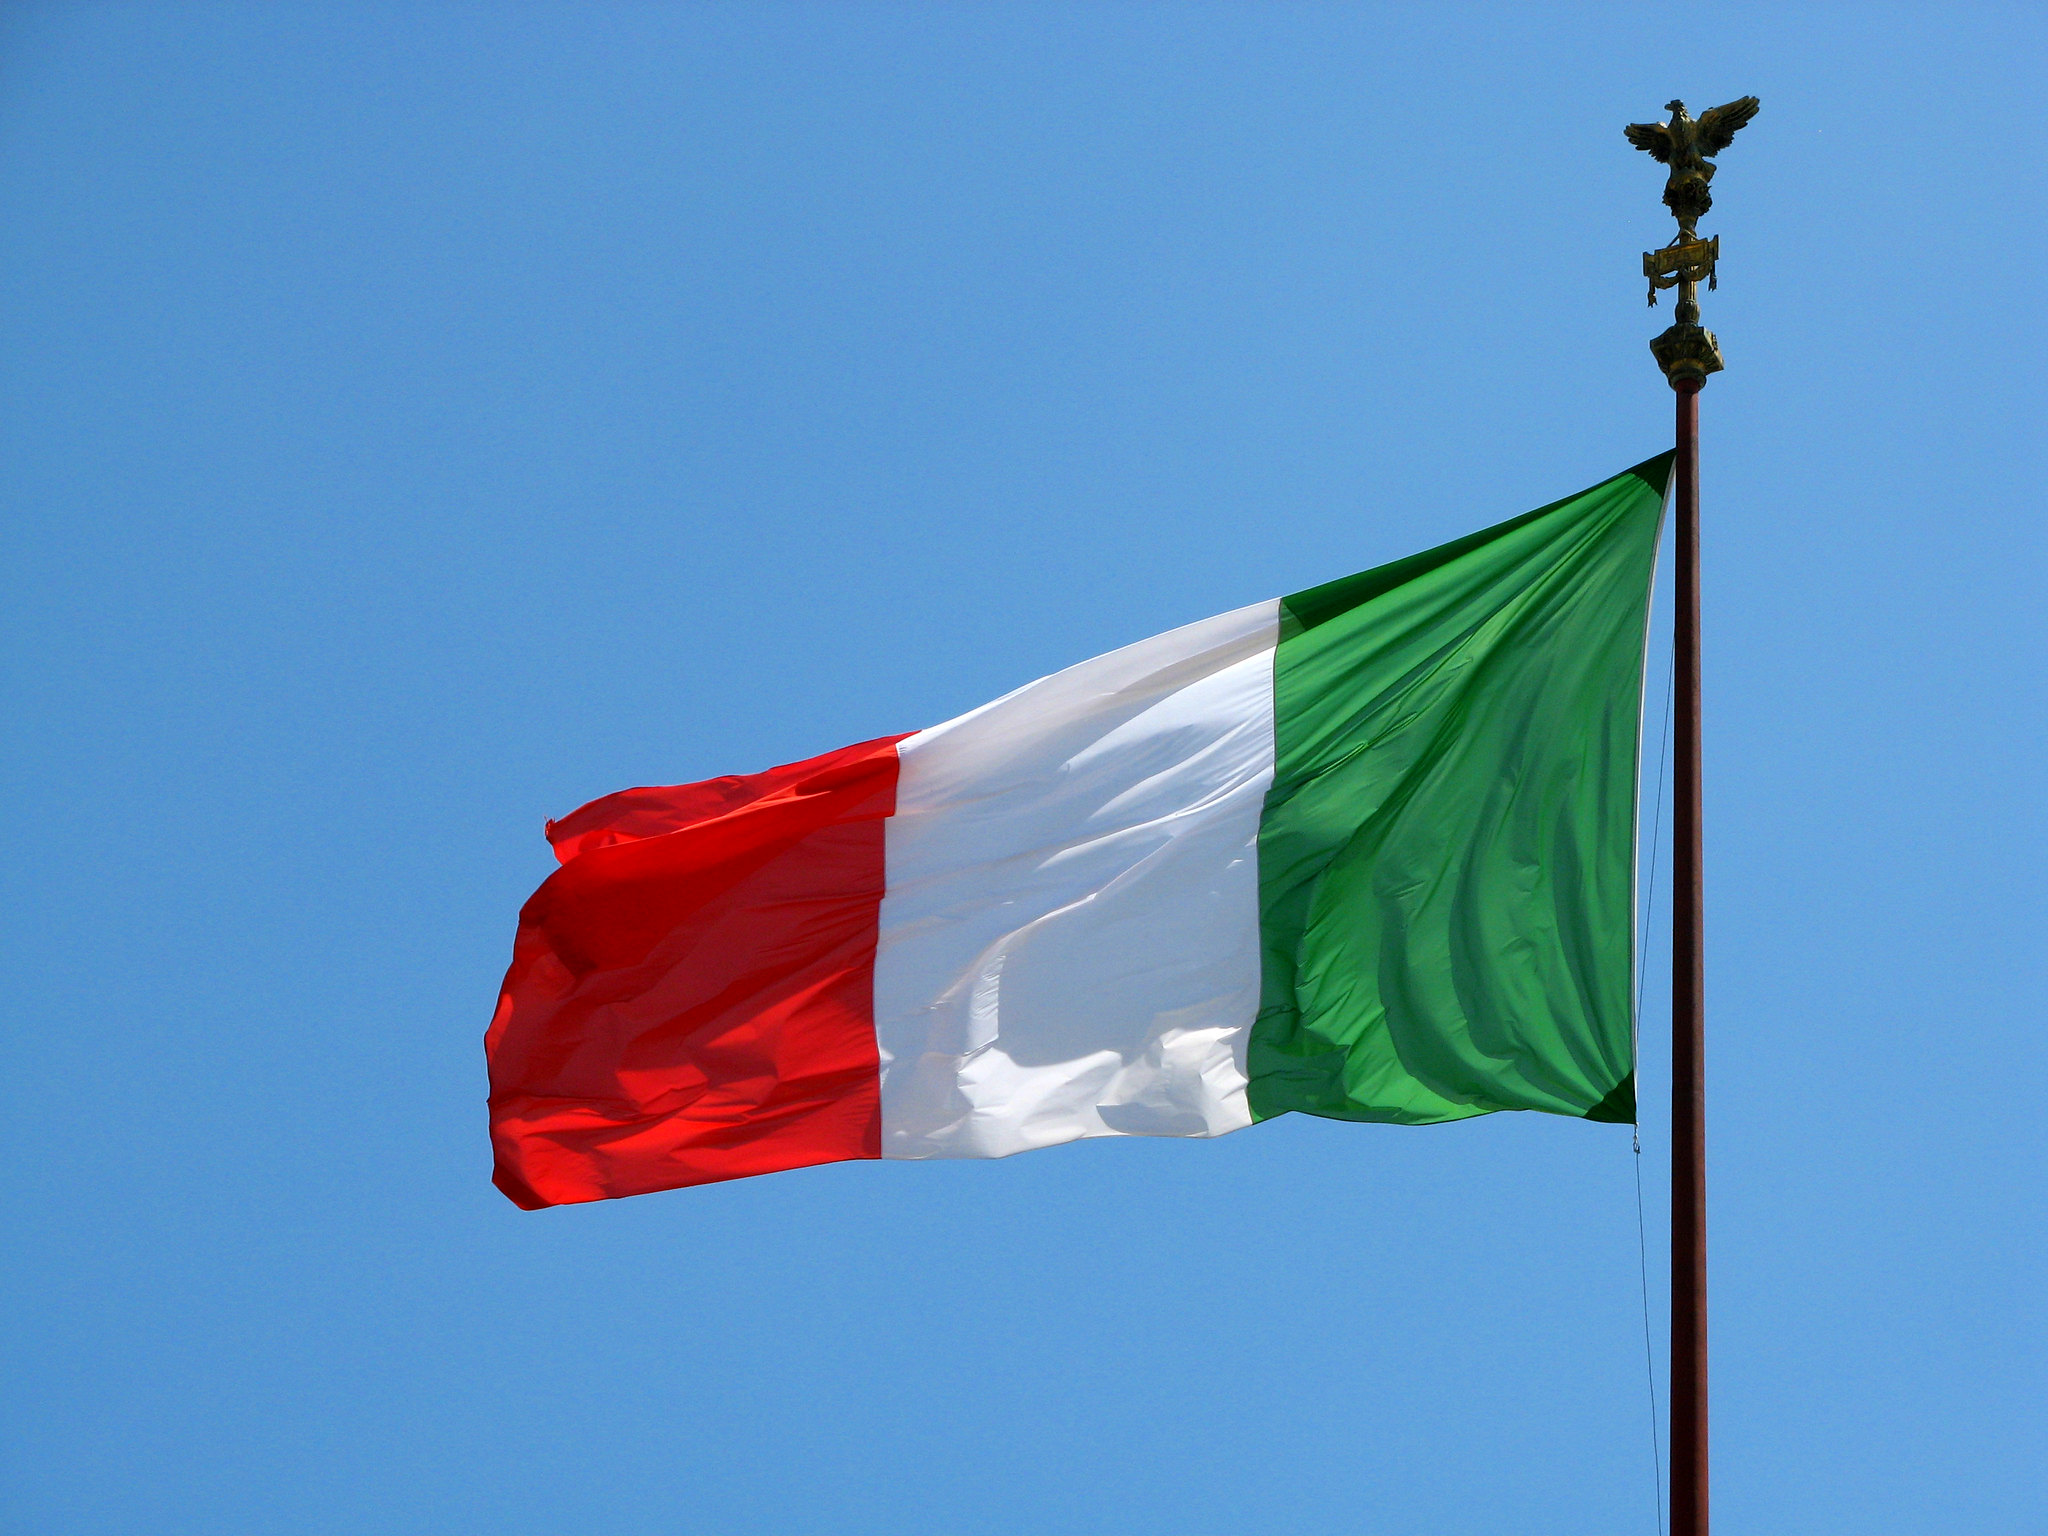 Italian Flag flying against a blue sky